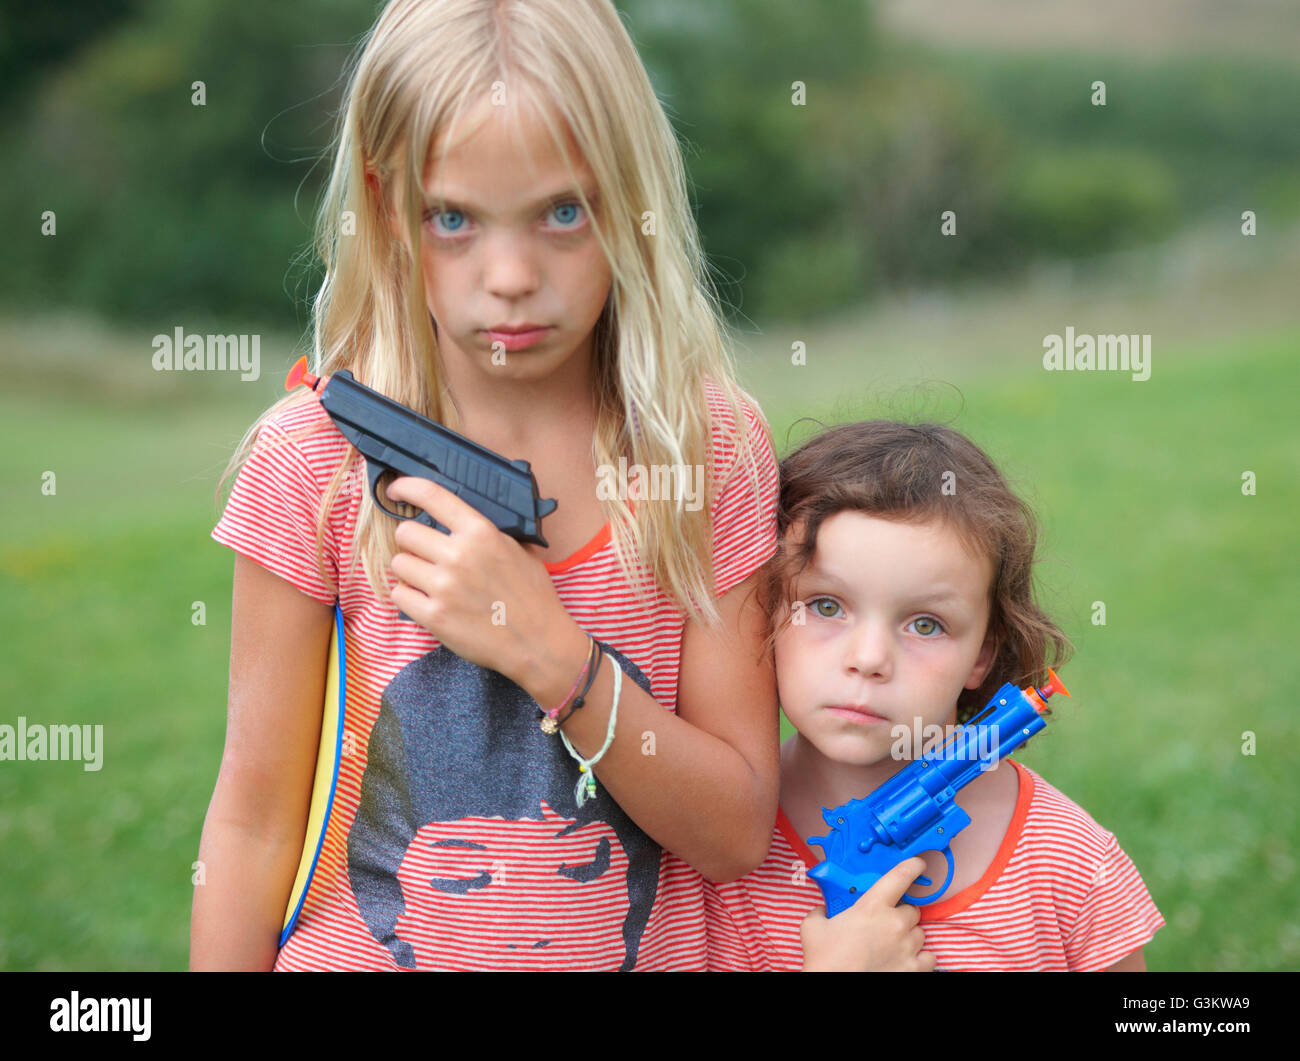 Retrato de dos jóvenes hermanas, sosteniendo pistolas de juguete Foto de stock